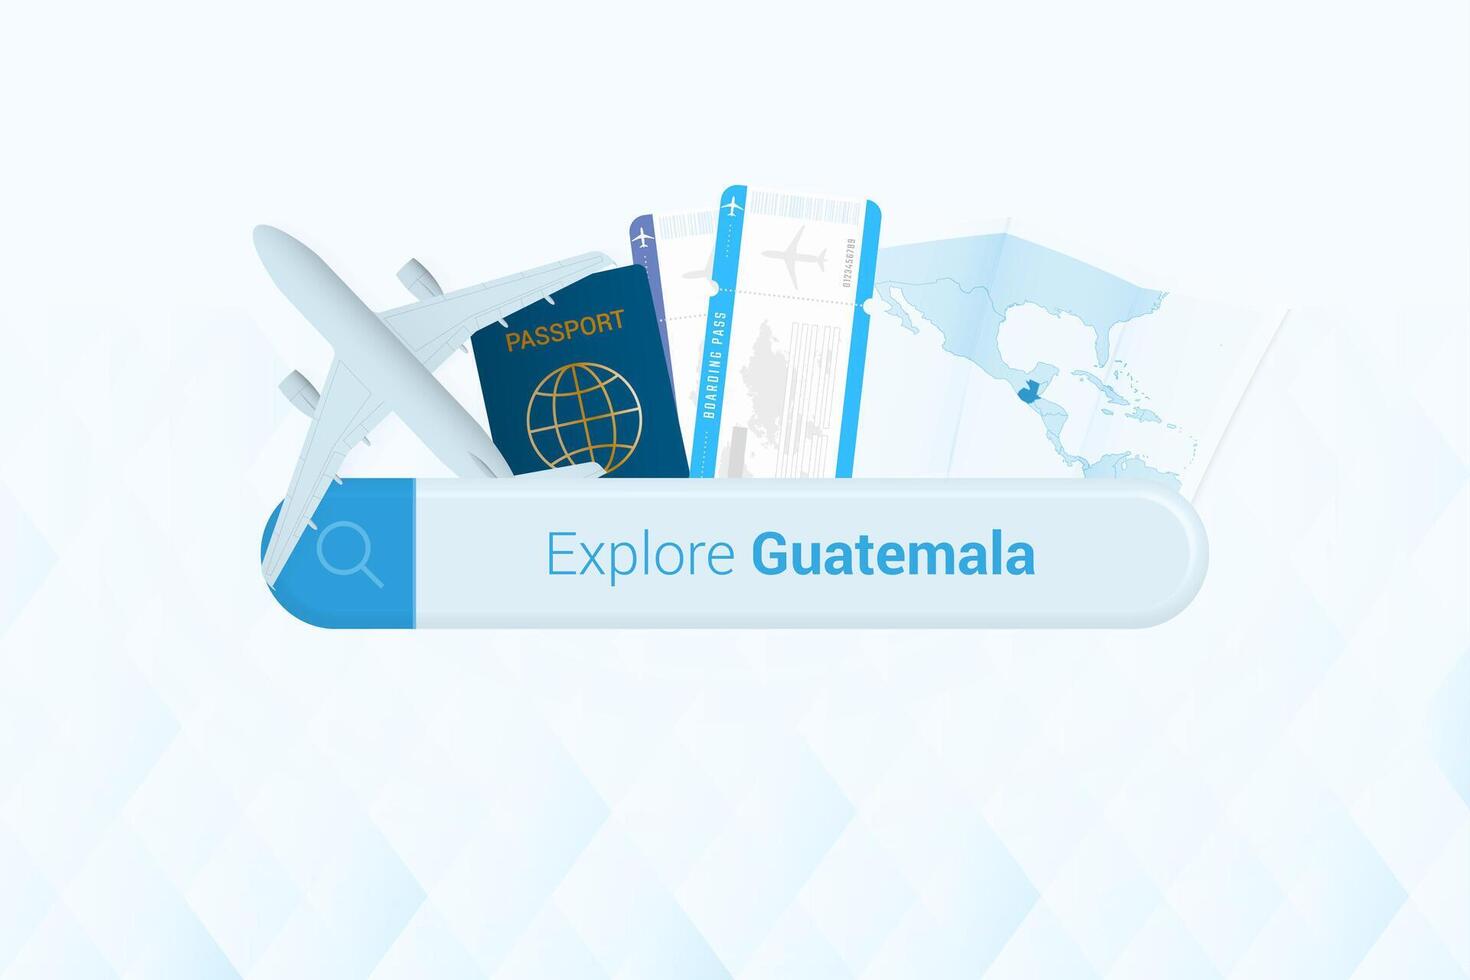 suchen Tickets zu Guatemala oder Reise Ziel im Guatemala. suchen Bar mit Flugzeug, Reisepass, Einsteigen passieren, Tickets und Karte. vektor